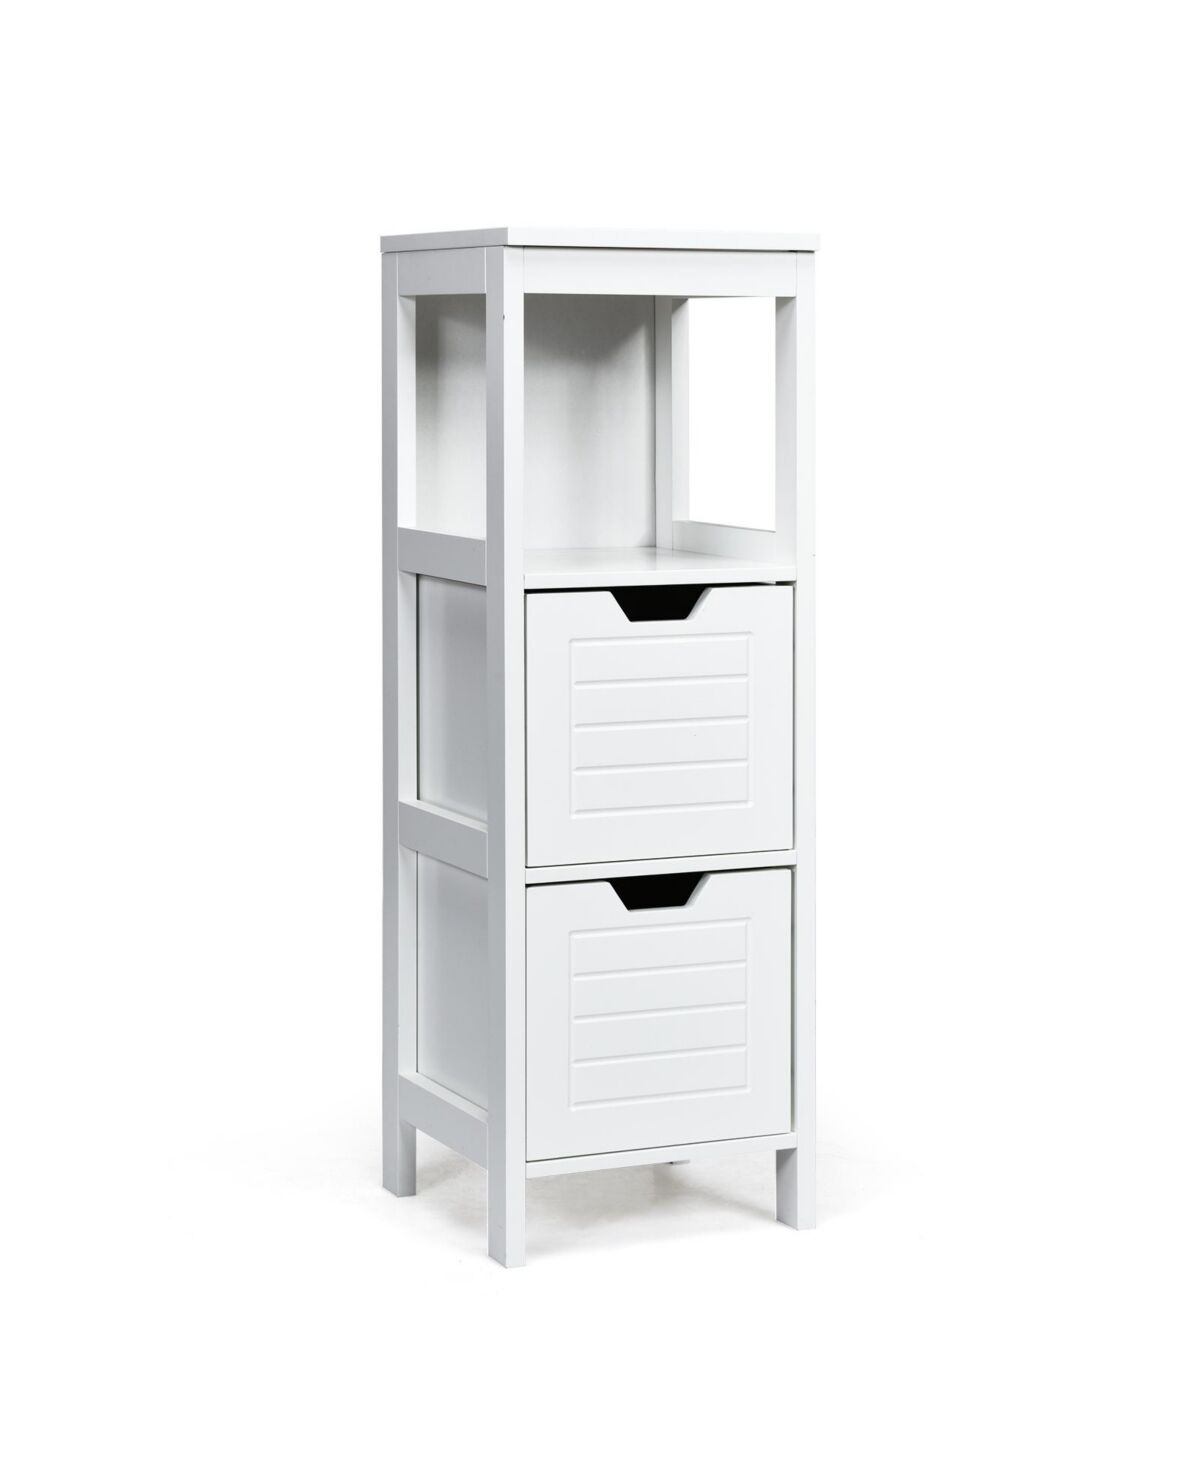 Slickblue Bathroom Wooden Floor Cabinet Multifunction Storage Rack Stand Organizer - White